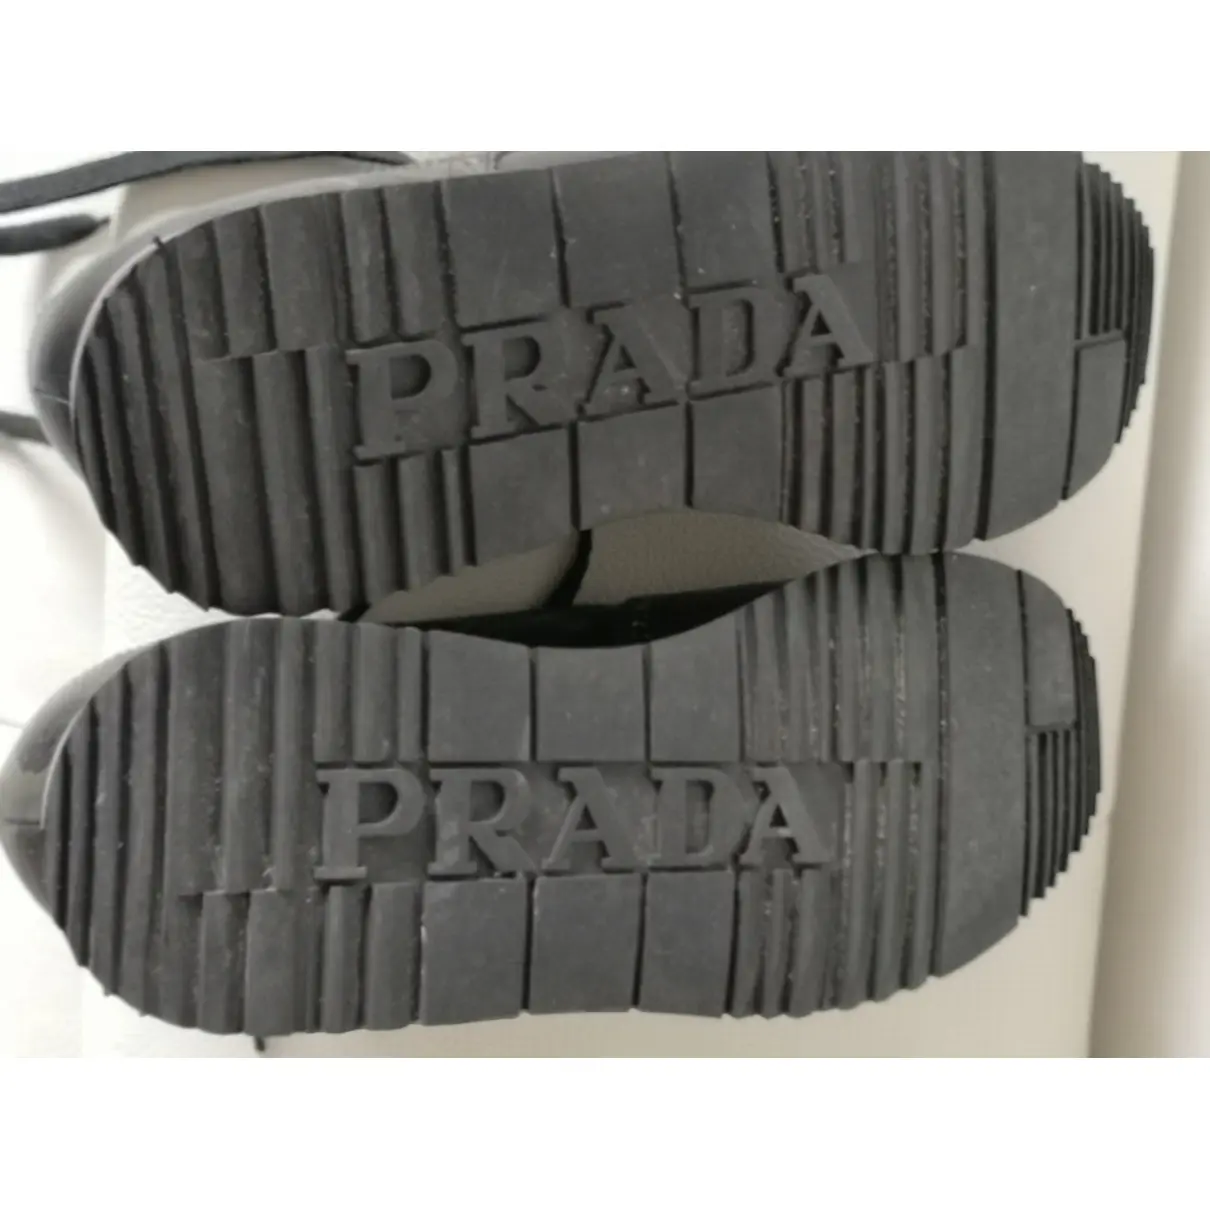 Leather lace ups Prada